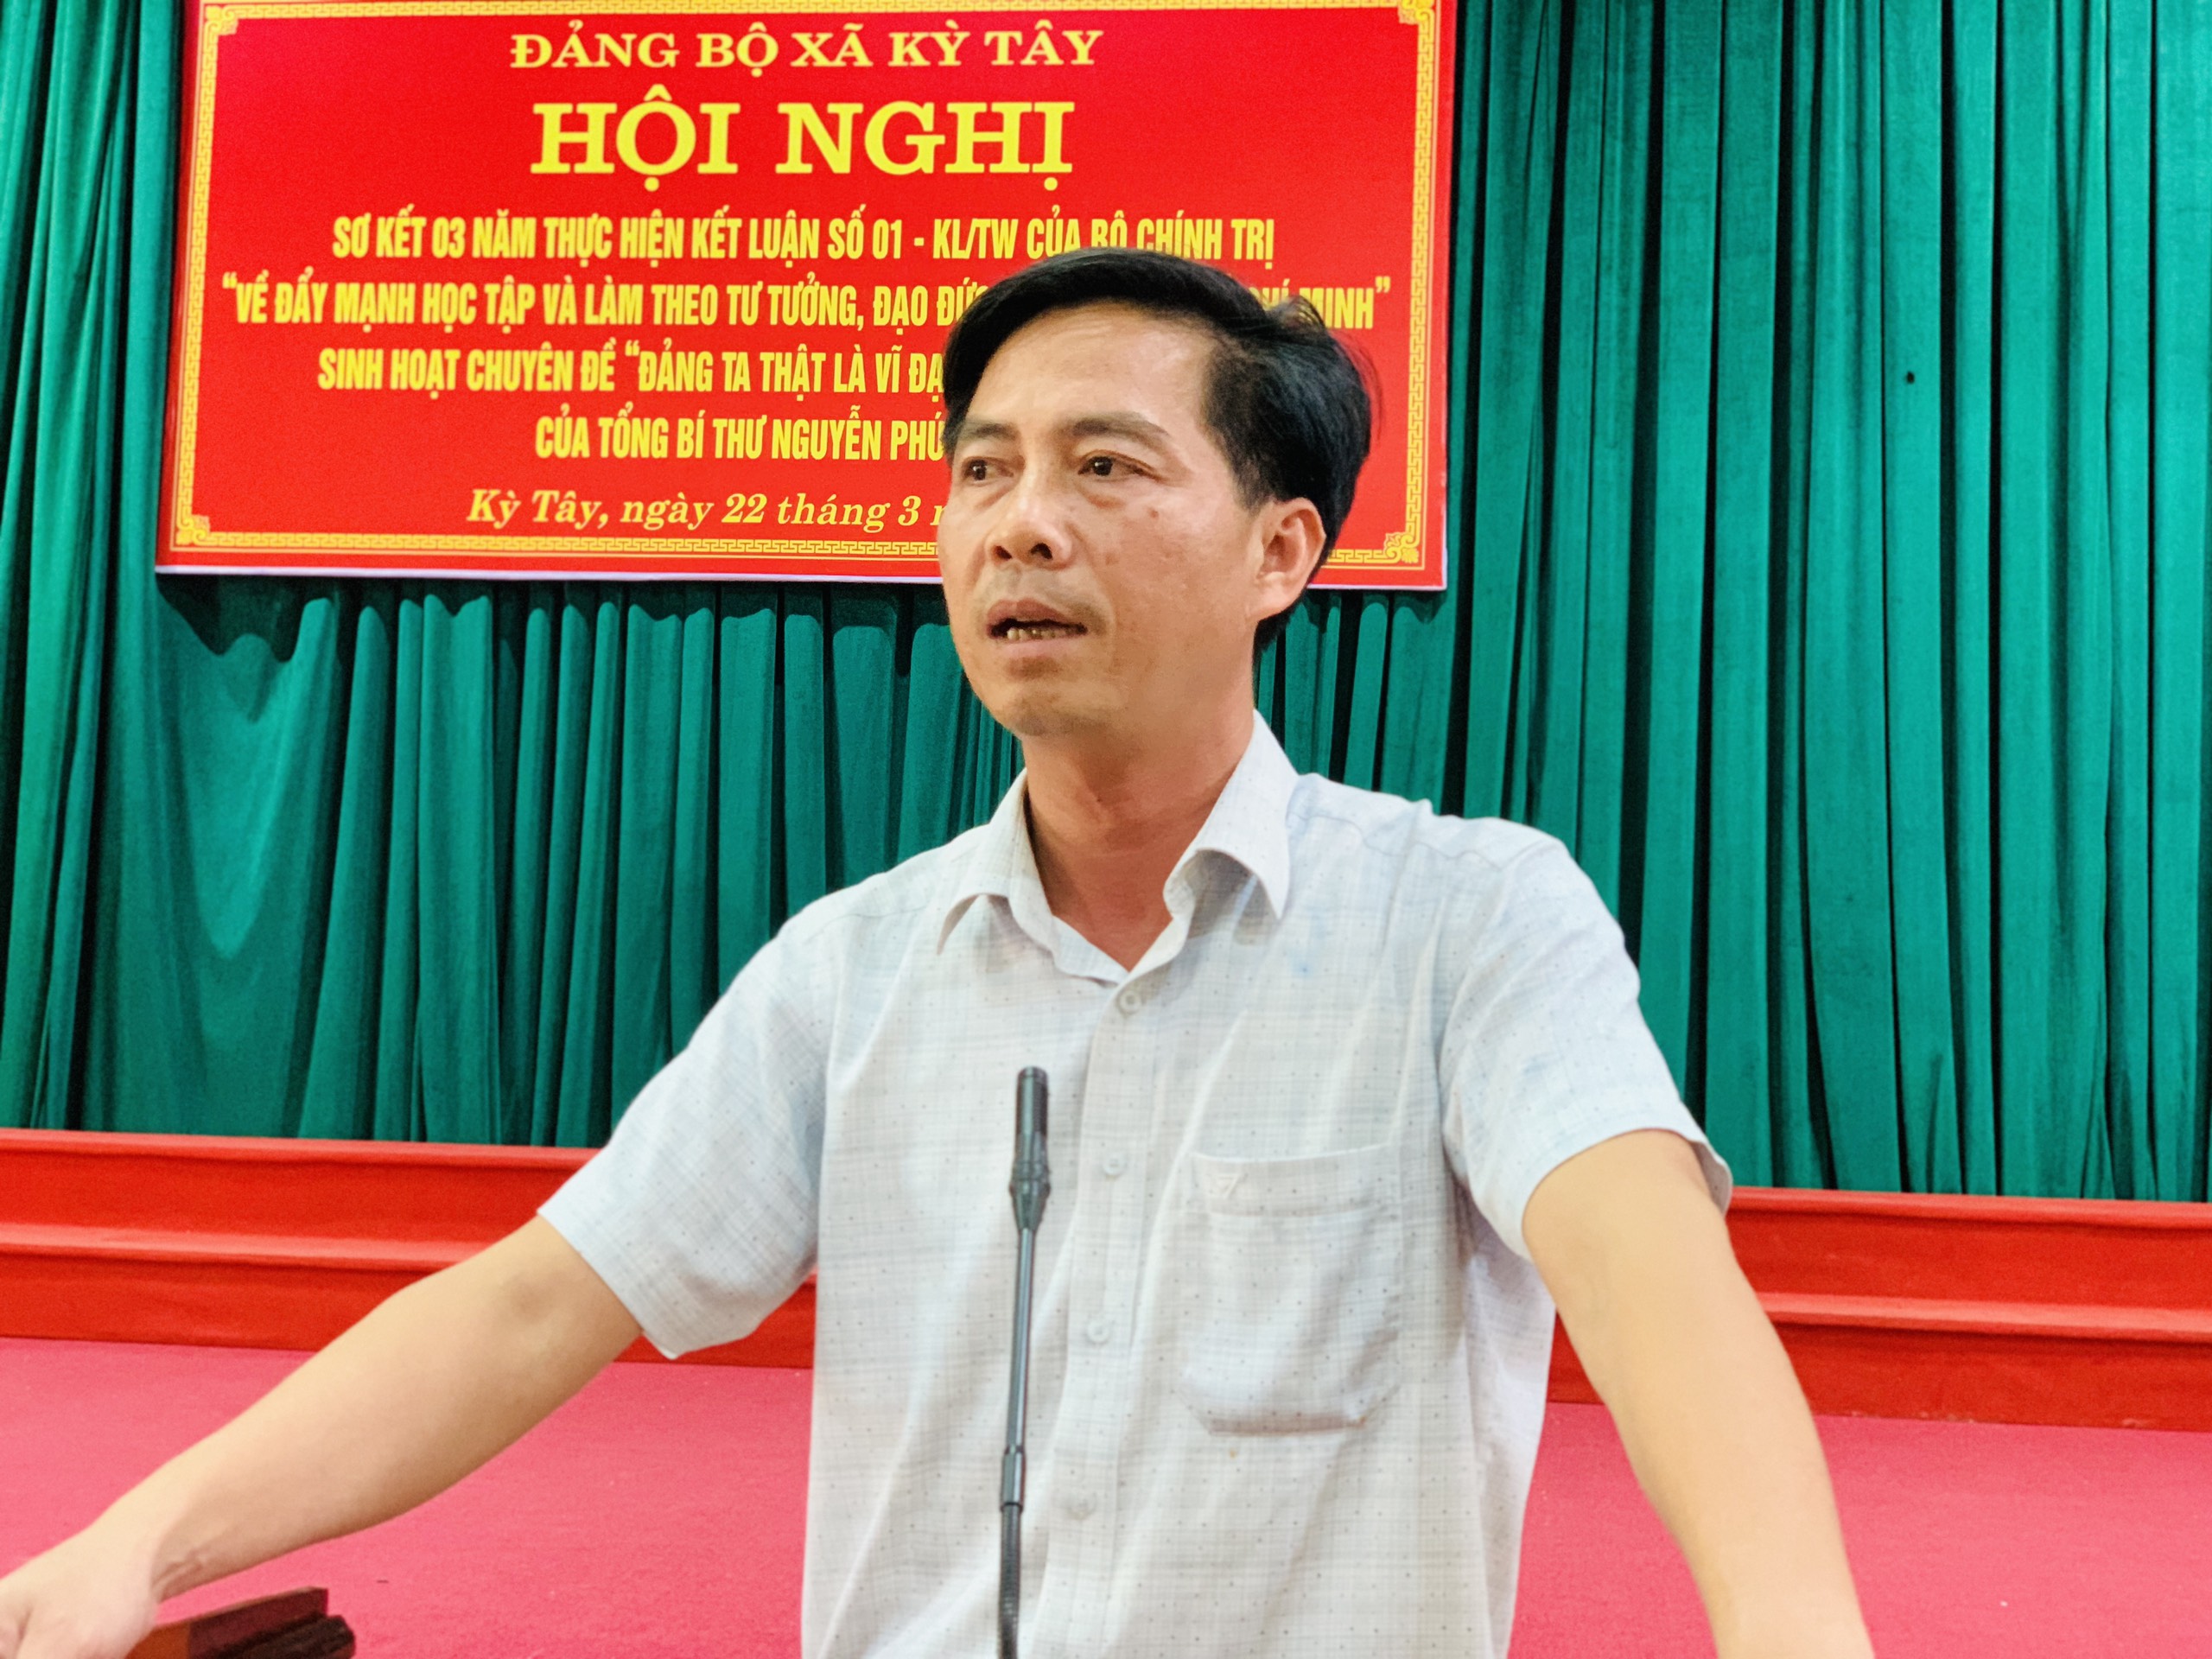 Ảnh: Đồng chí Nguyễn Văn Hệ, Bí thư Đảng ủy khai mạc hội nghị